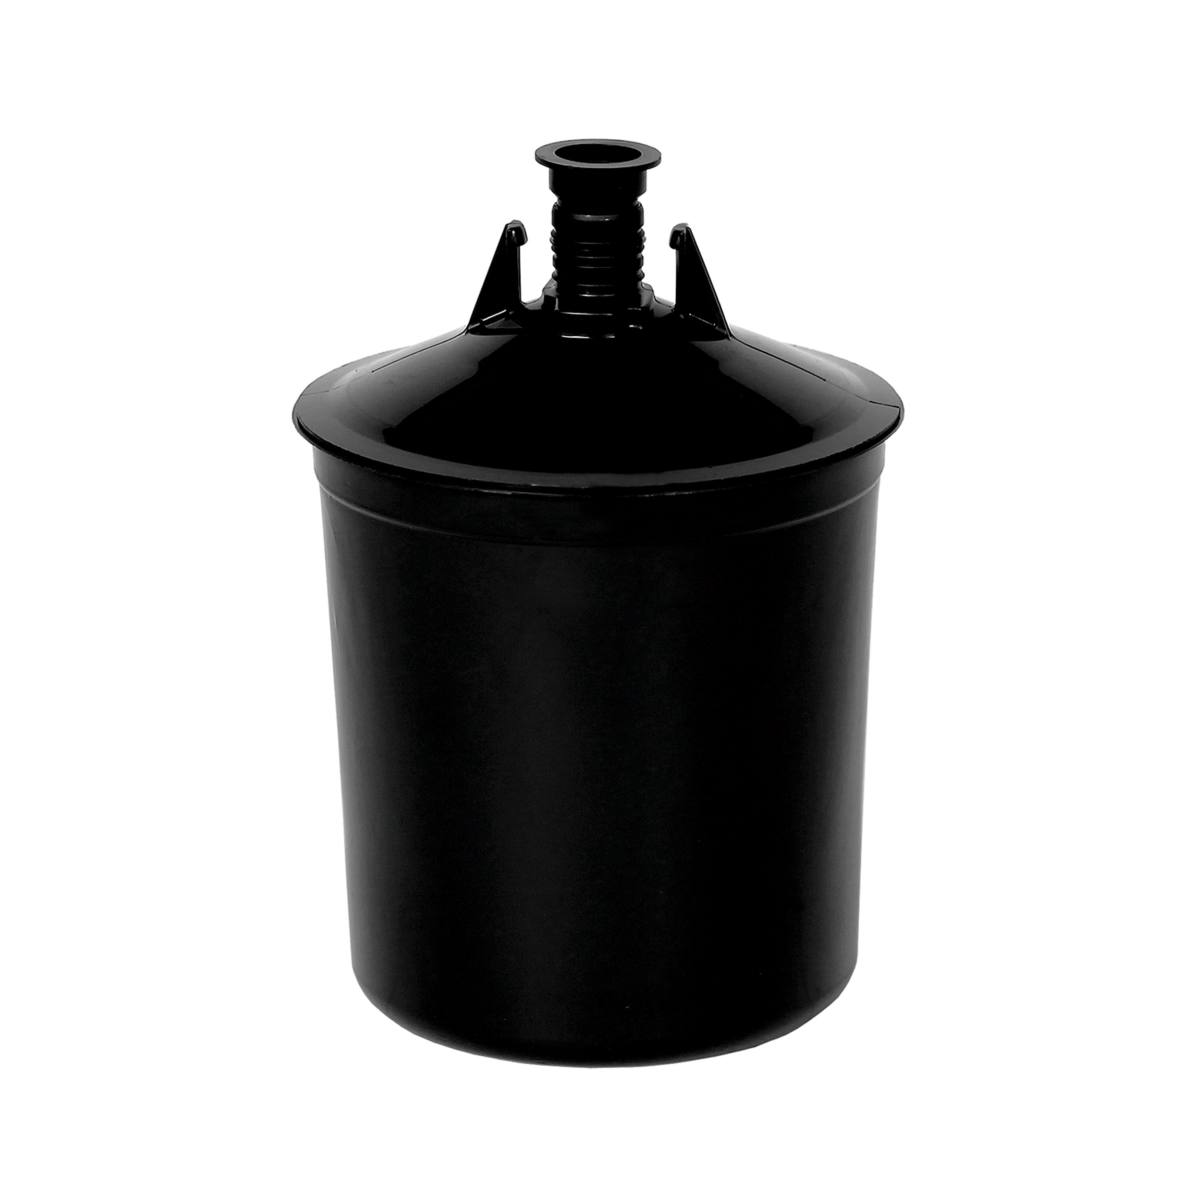 3M PPS Juego UV serie 2.0, estándar, 650 ml, filtro de 200Î¼, 50 vasos interiores / 50 tapas / 32 tapones / 1 vaso exterior #26710